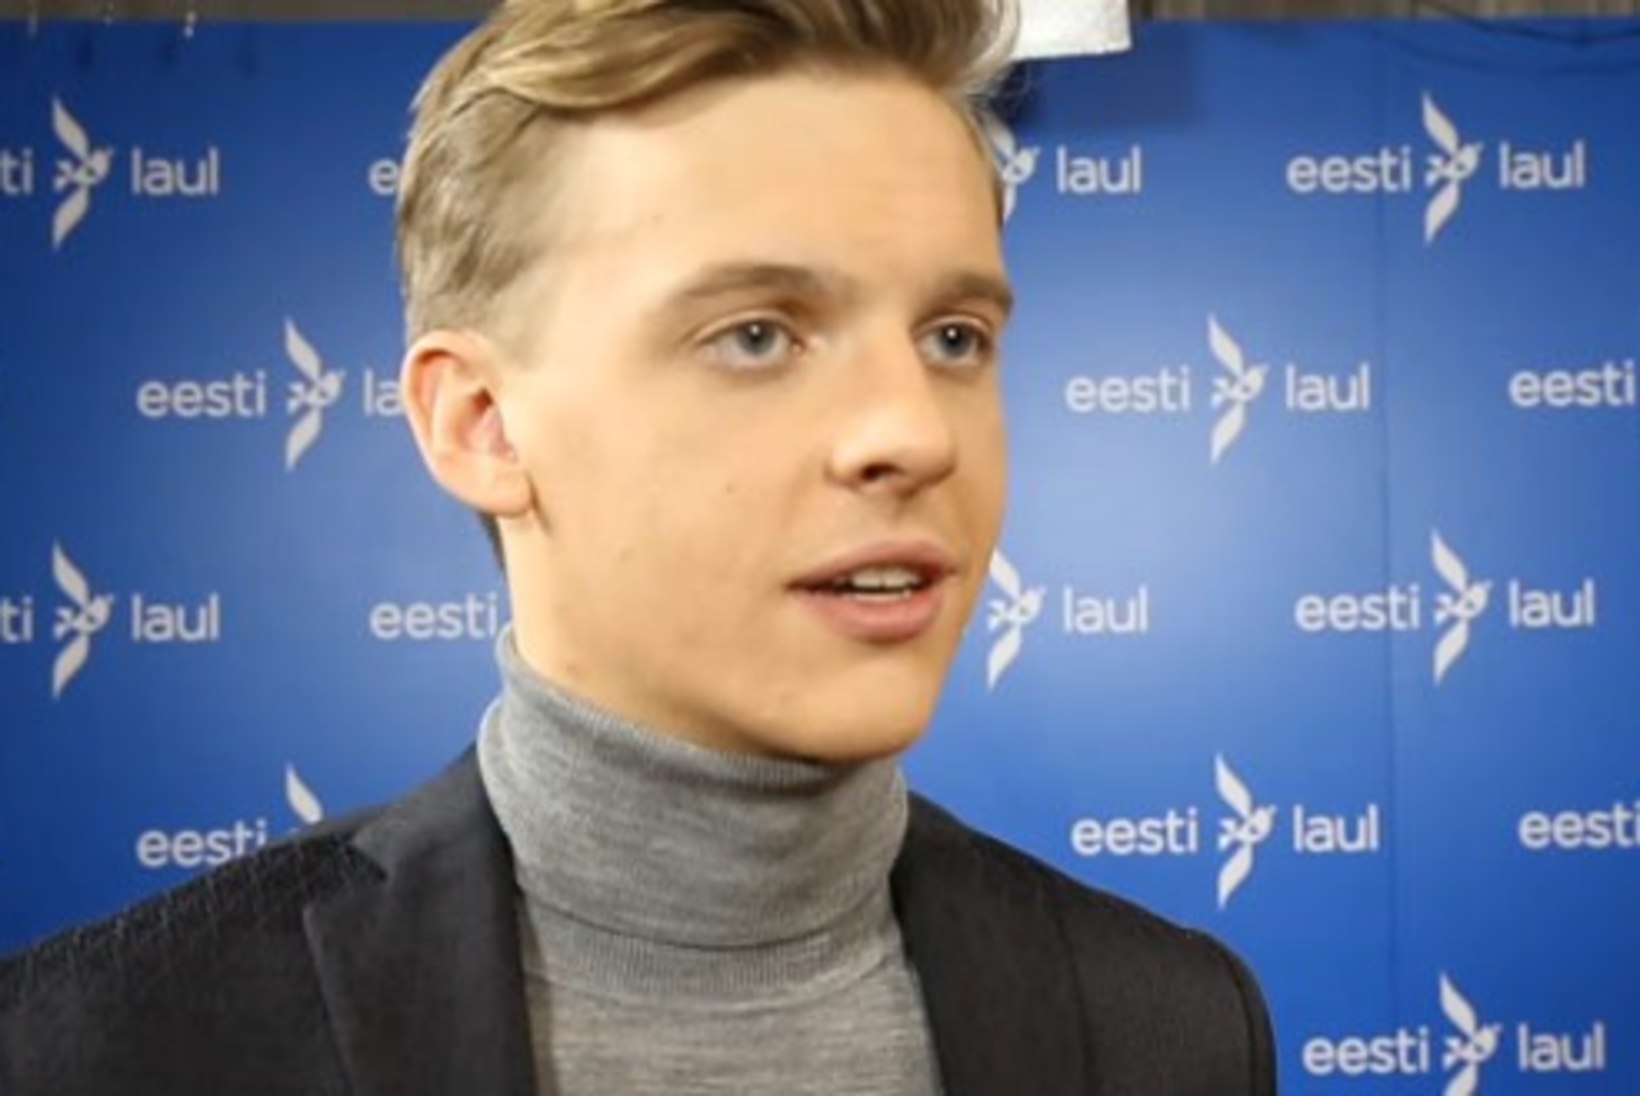 ÕHTULEHE VIDEO | Jüri Pootsmann: pöördusin ise Stigi ja Fredi poole palvega mulle "Eesti laul" kirjutada